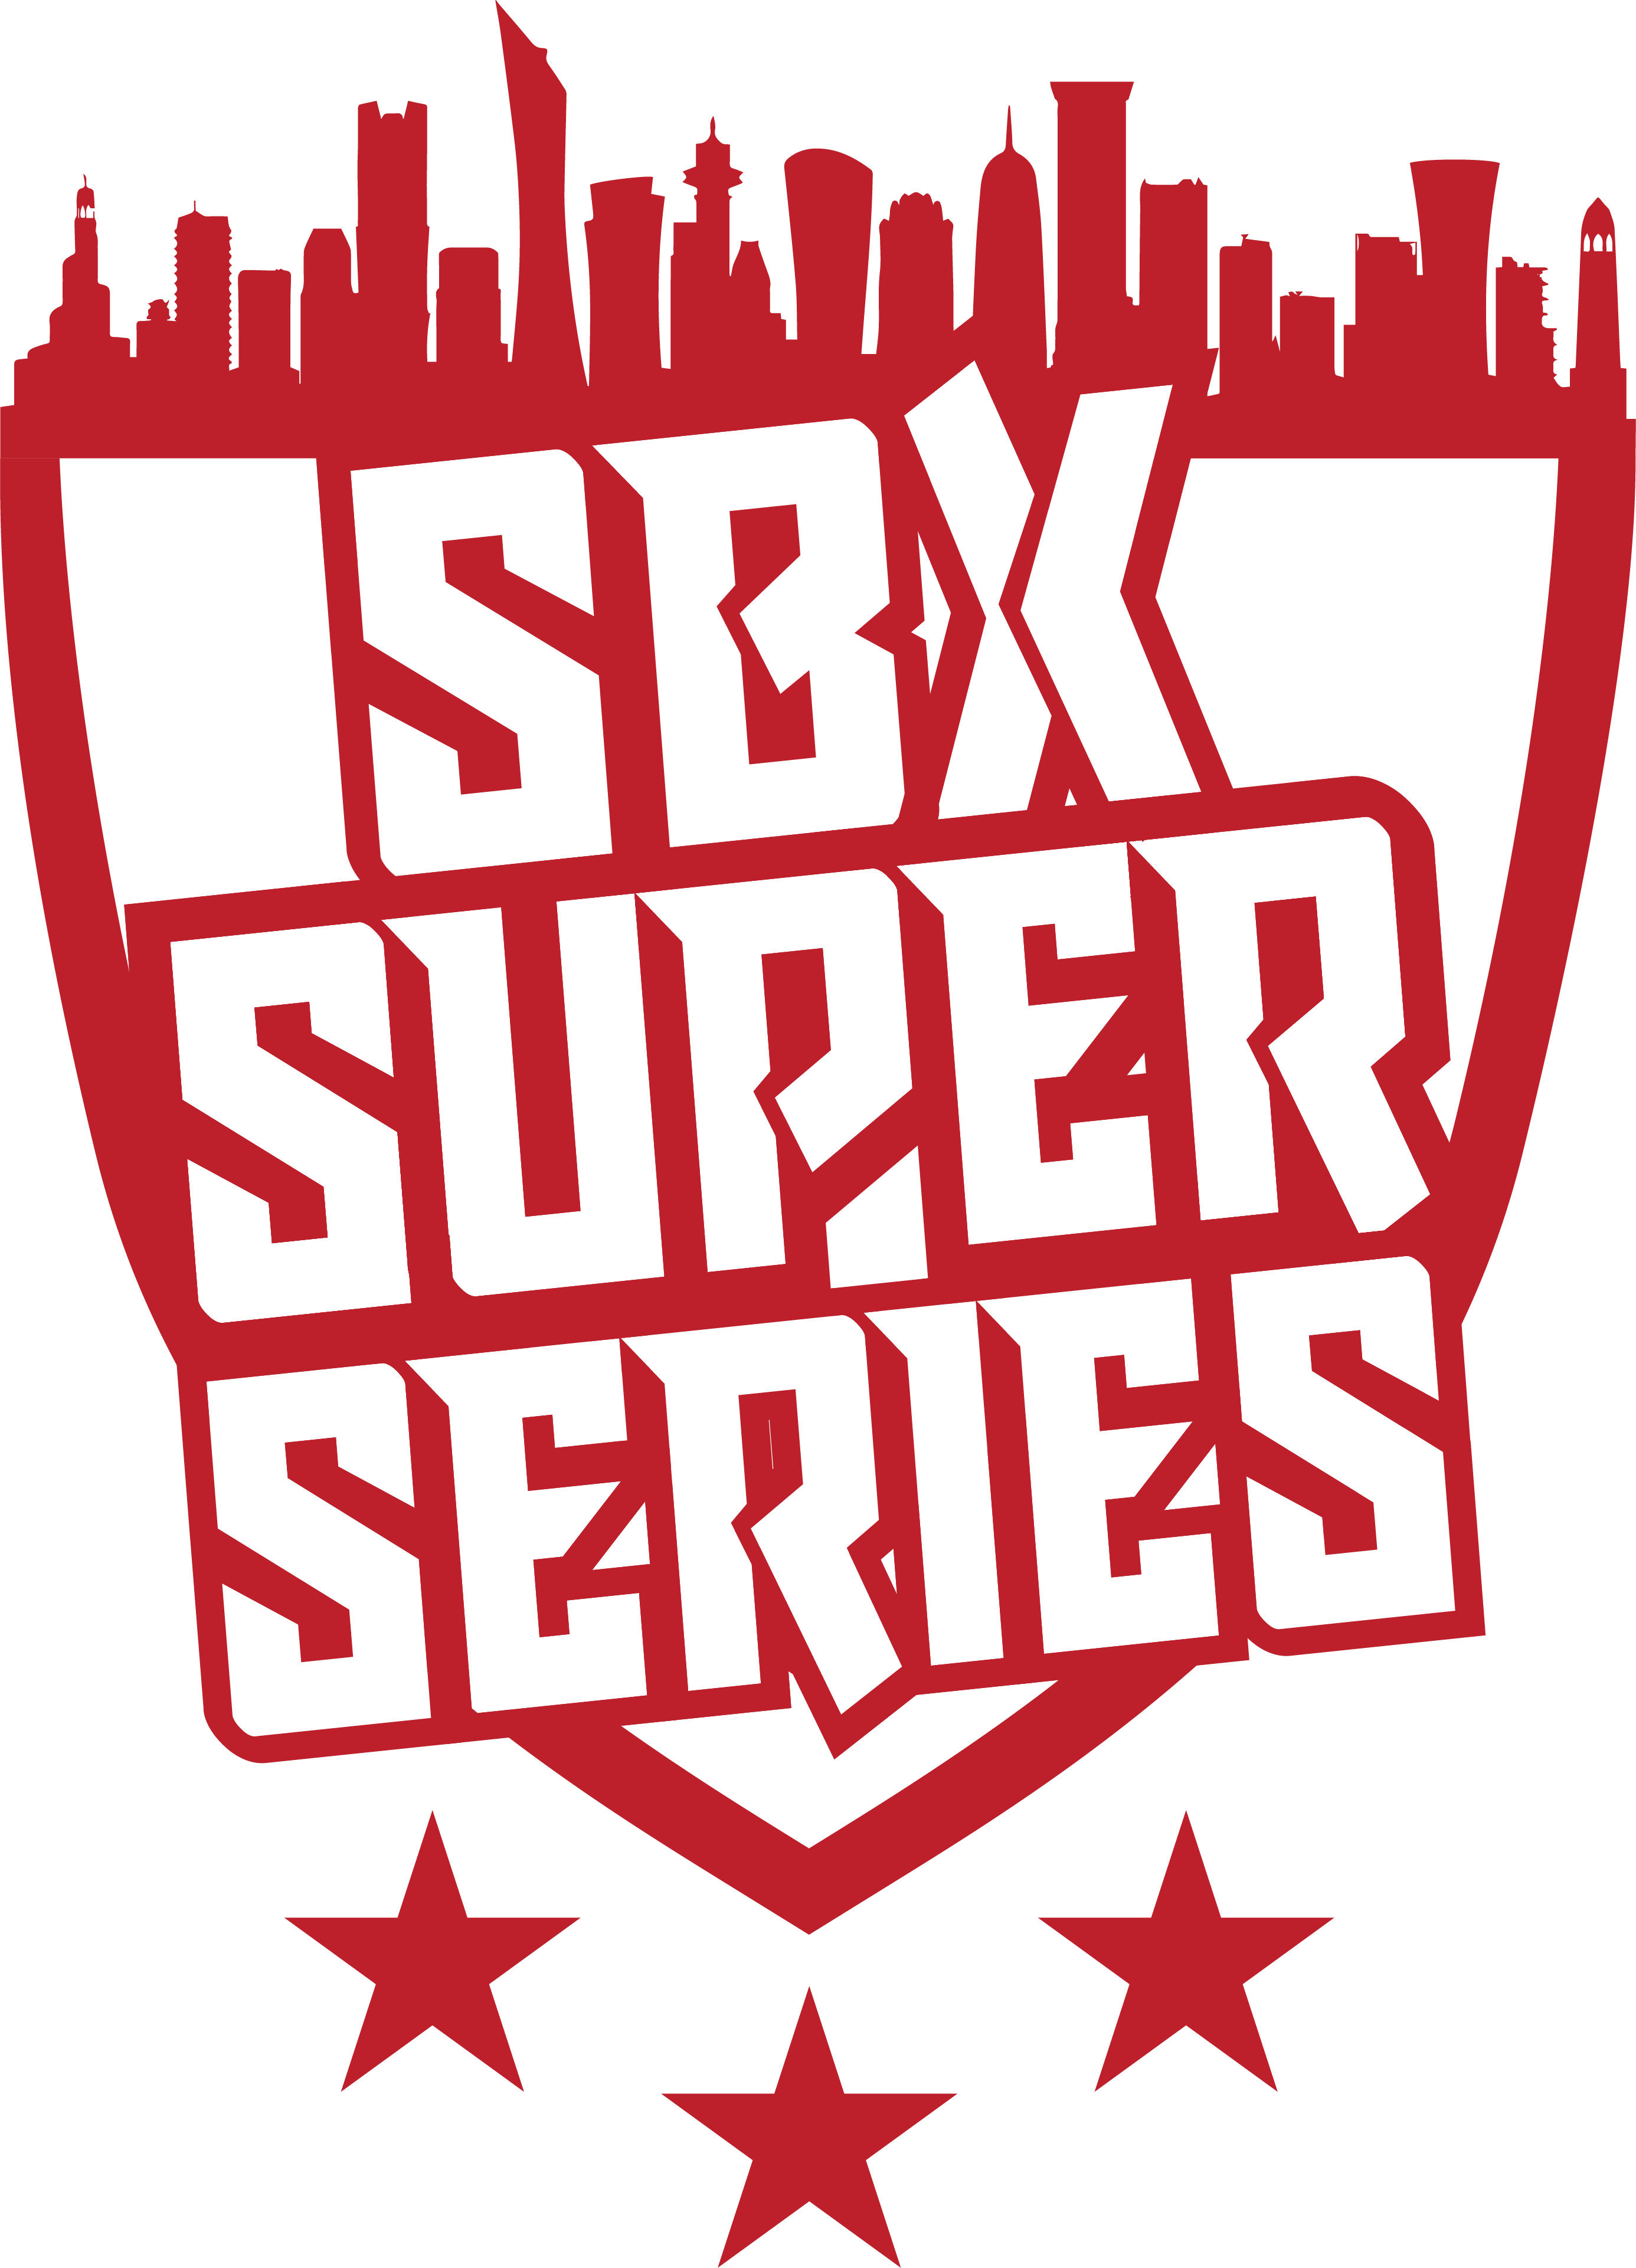  SBX SUPER SERIES 3